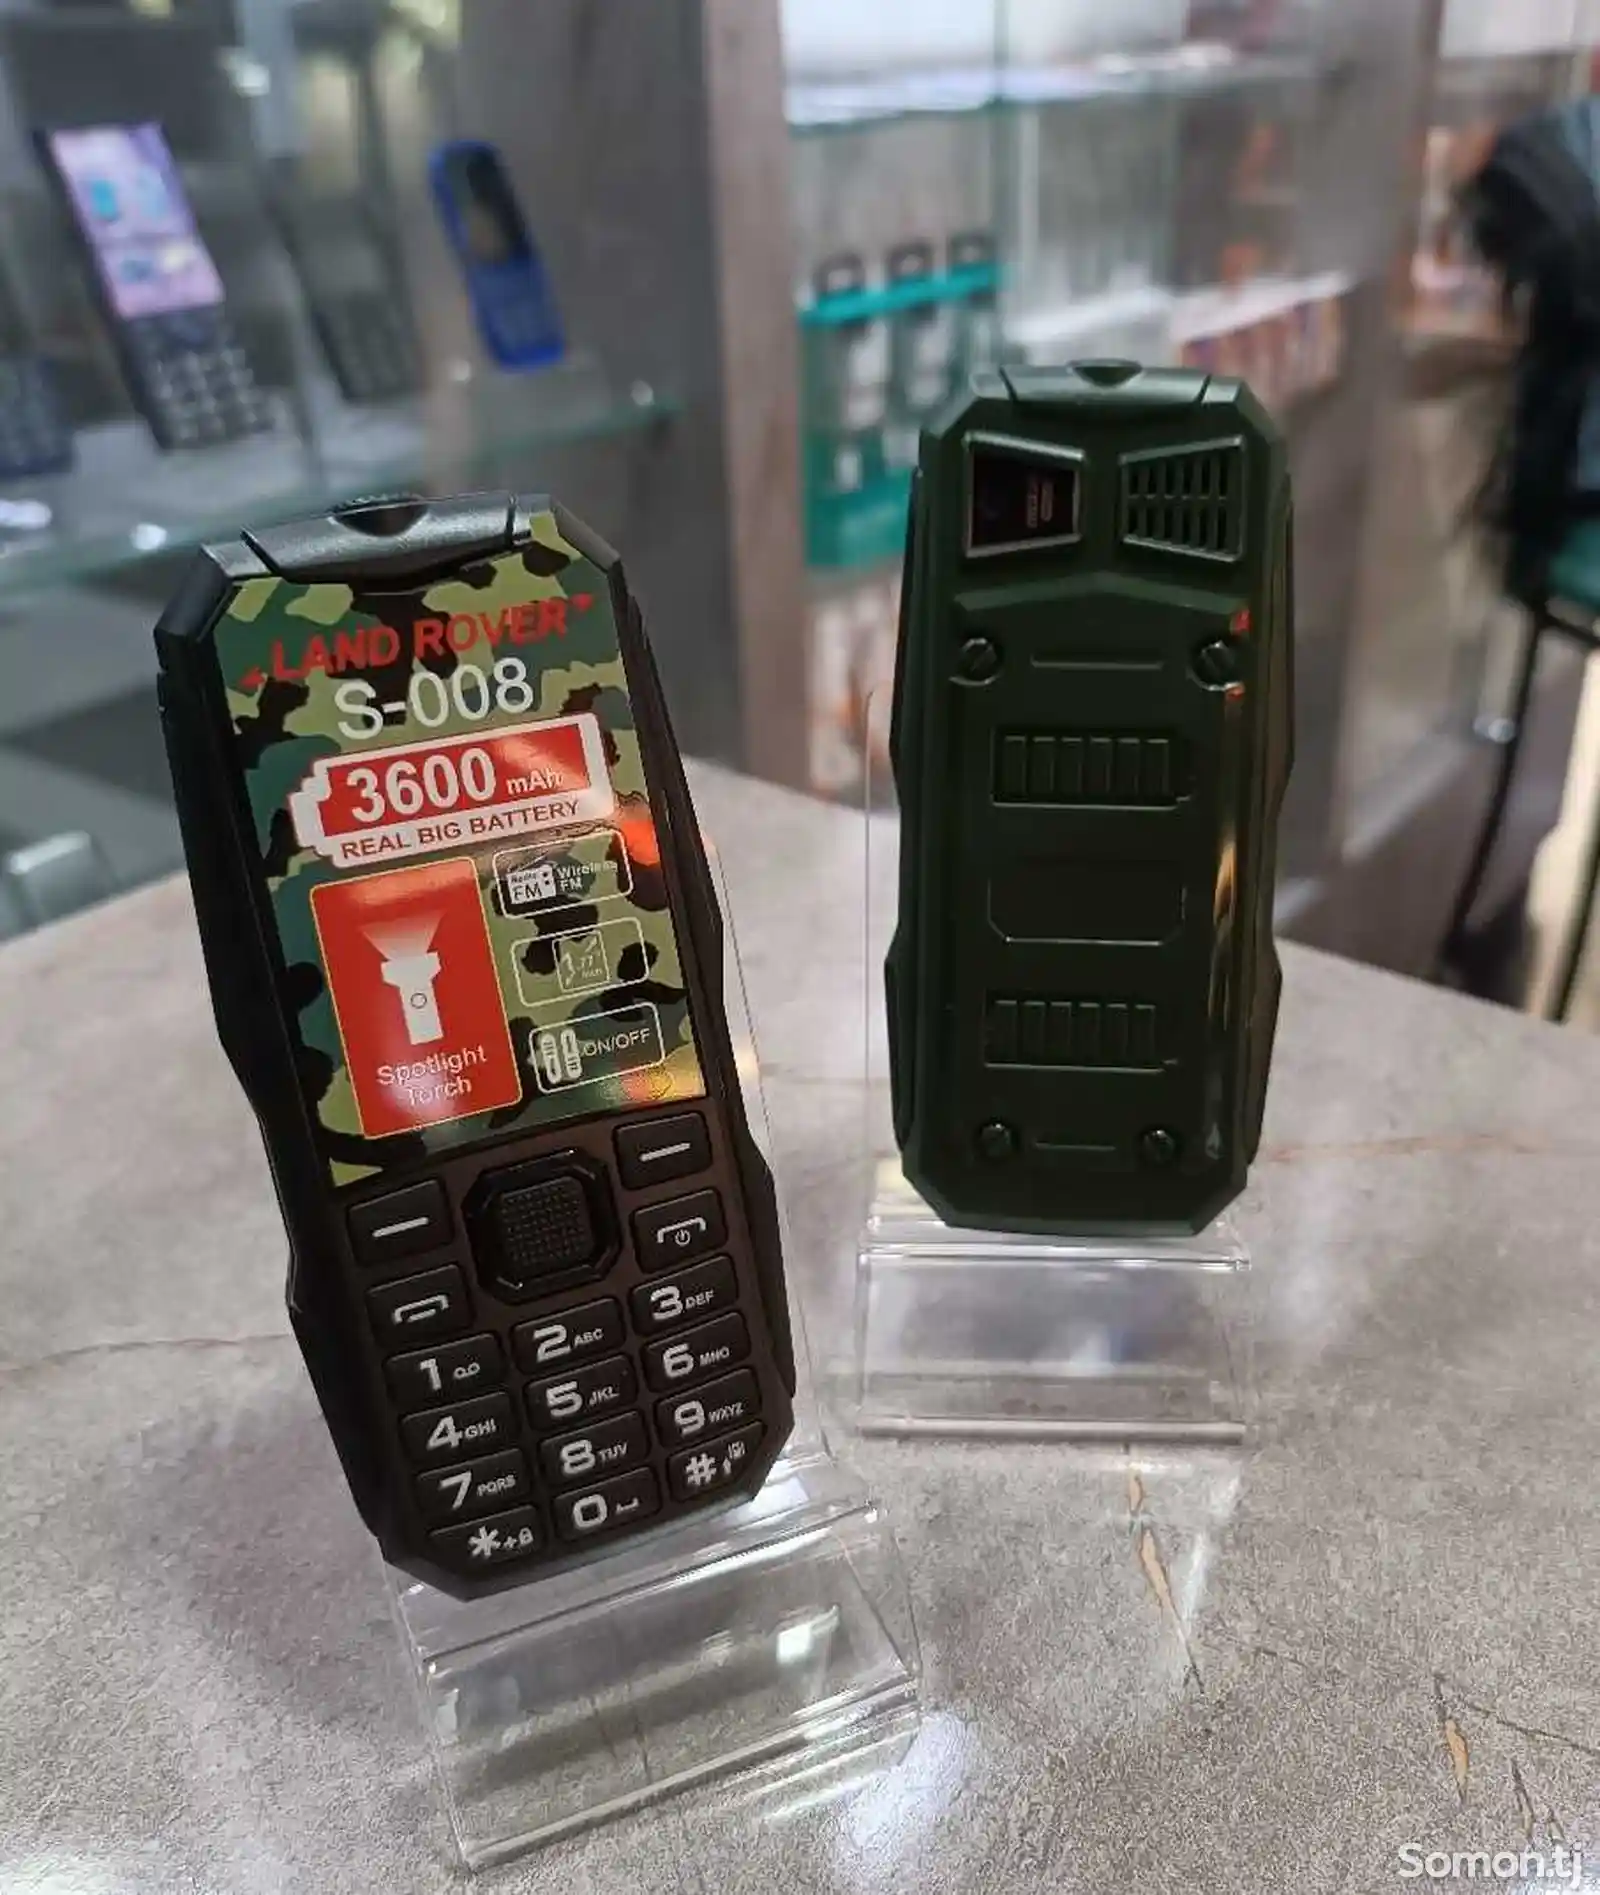 Nokia S-008-1